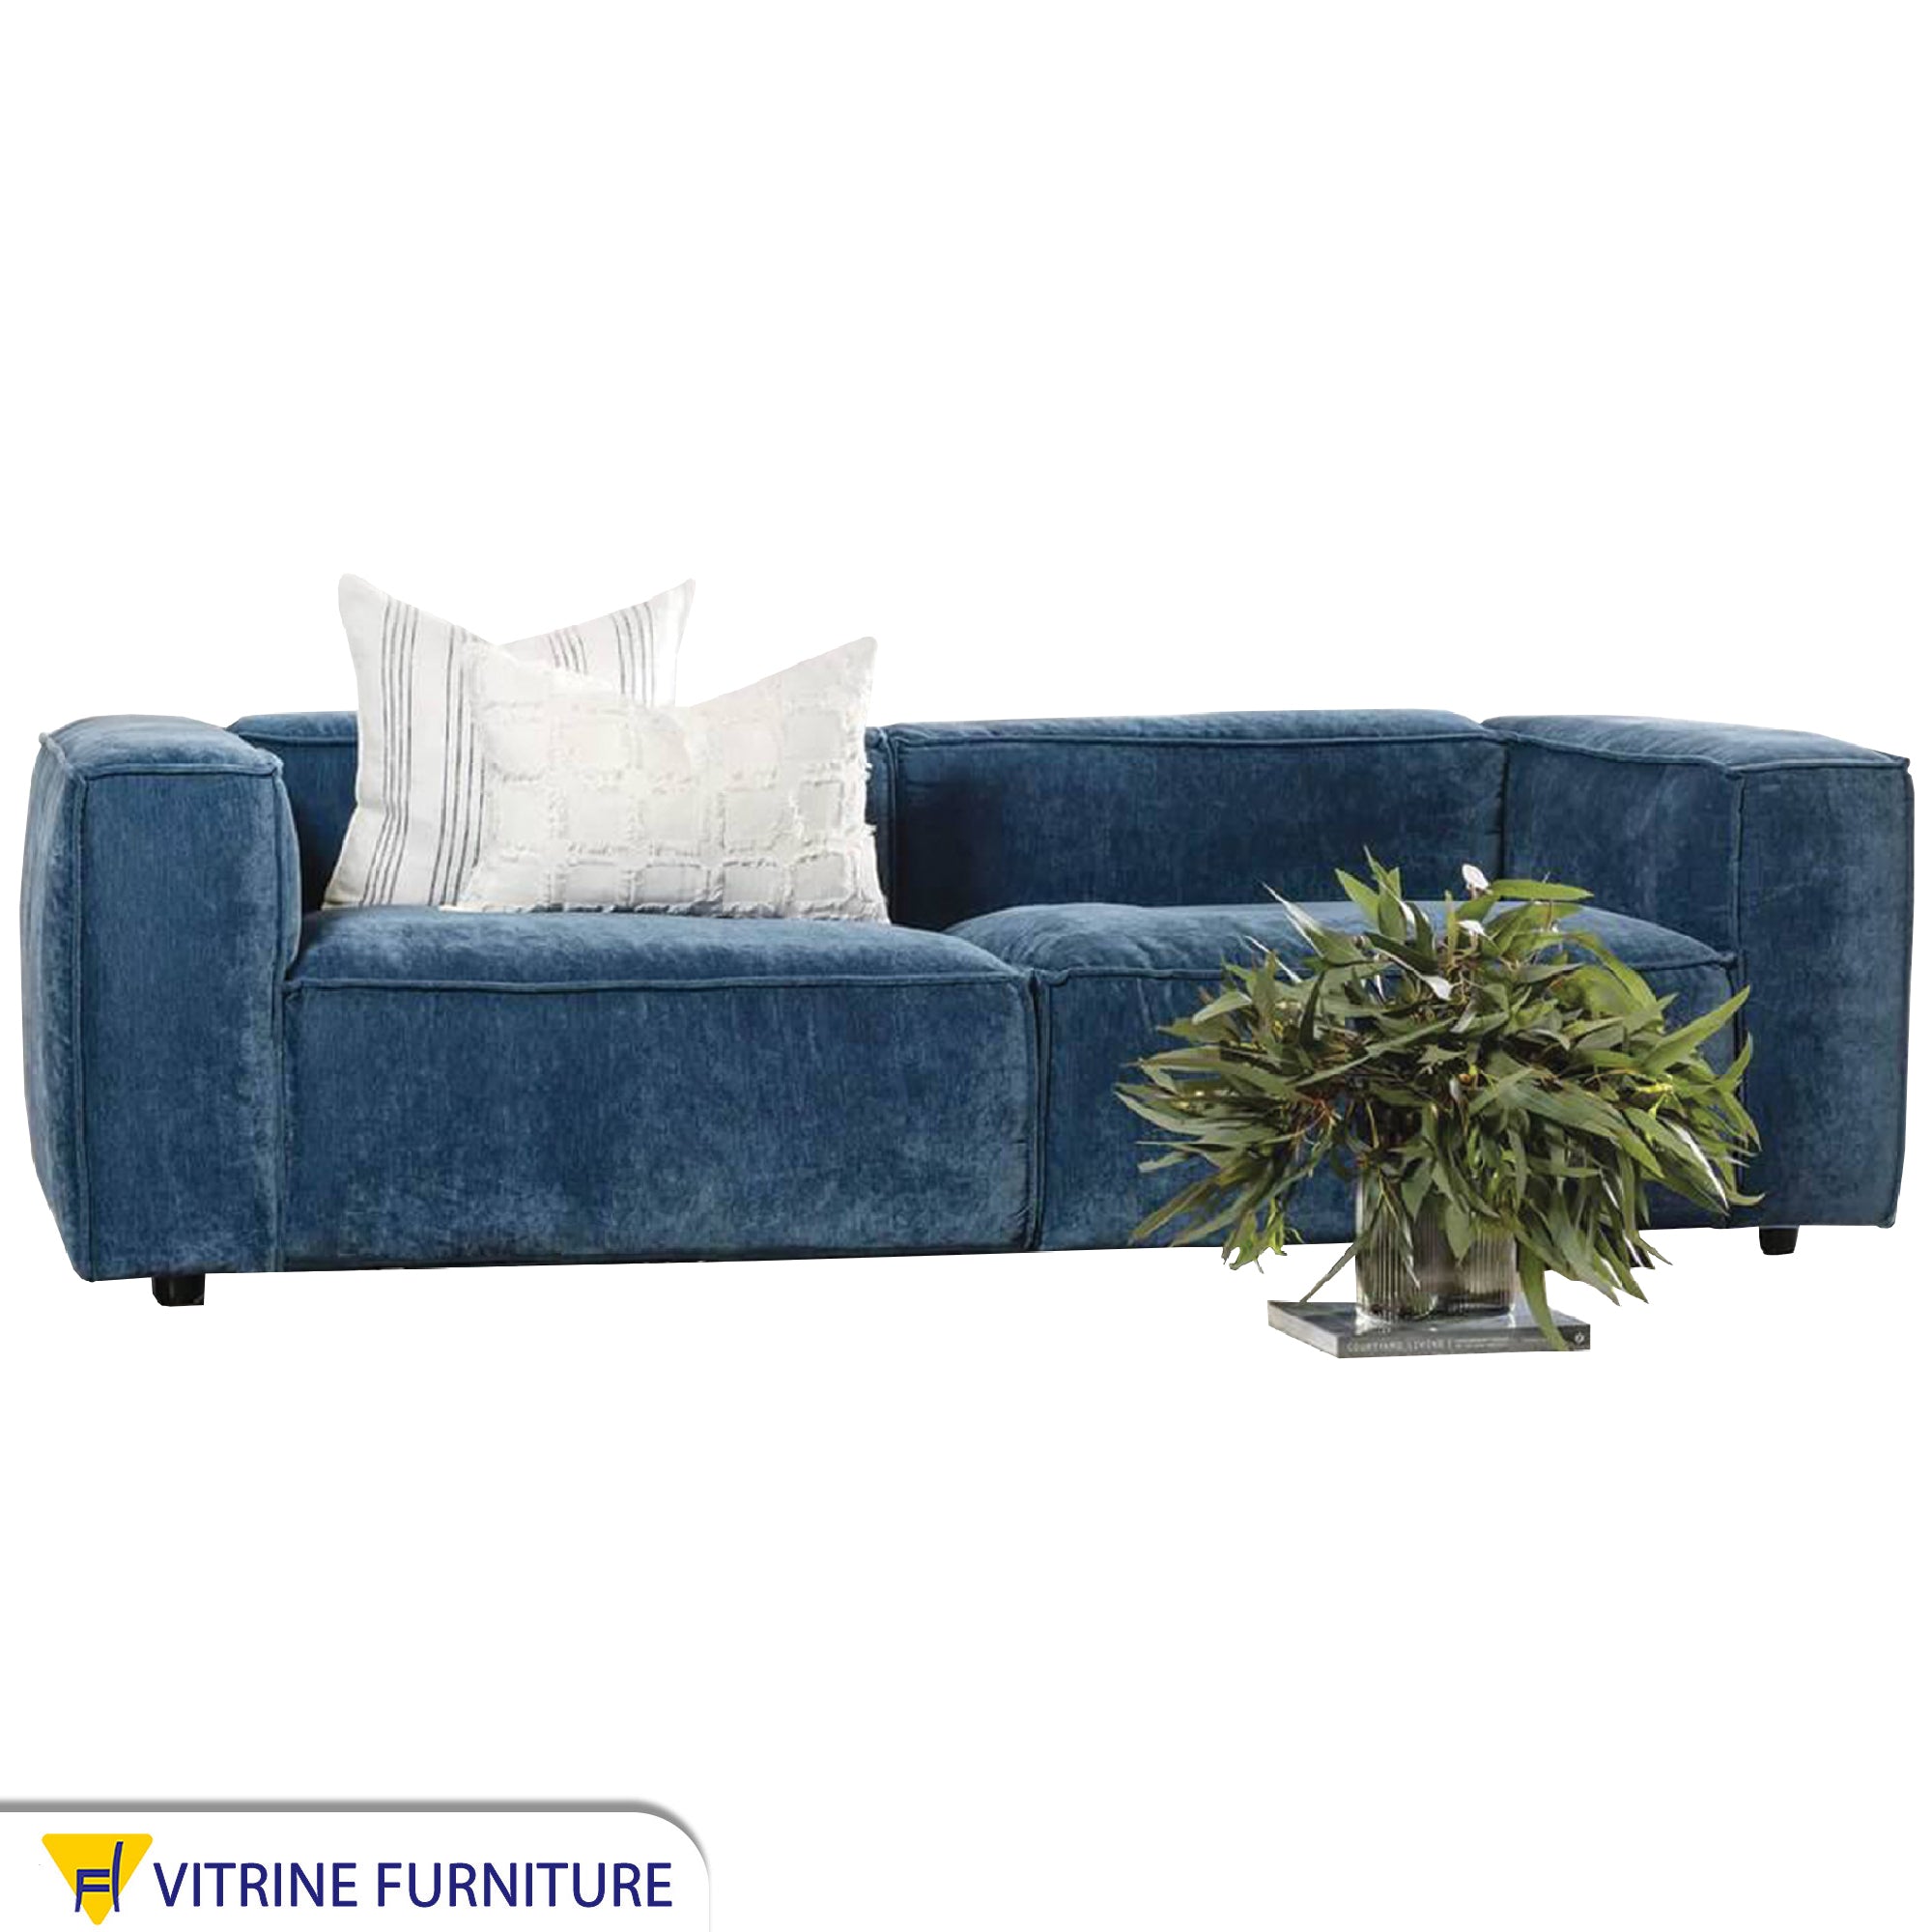 Totally upholstered blue sofa